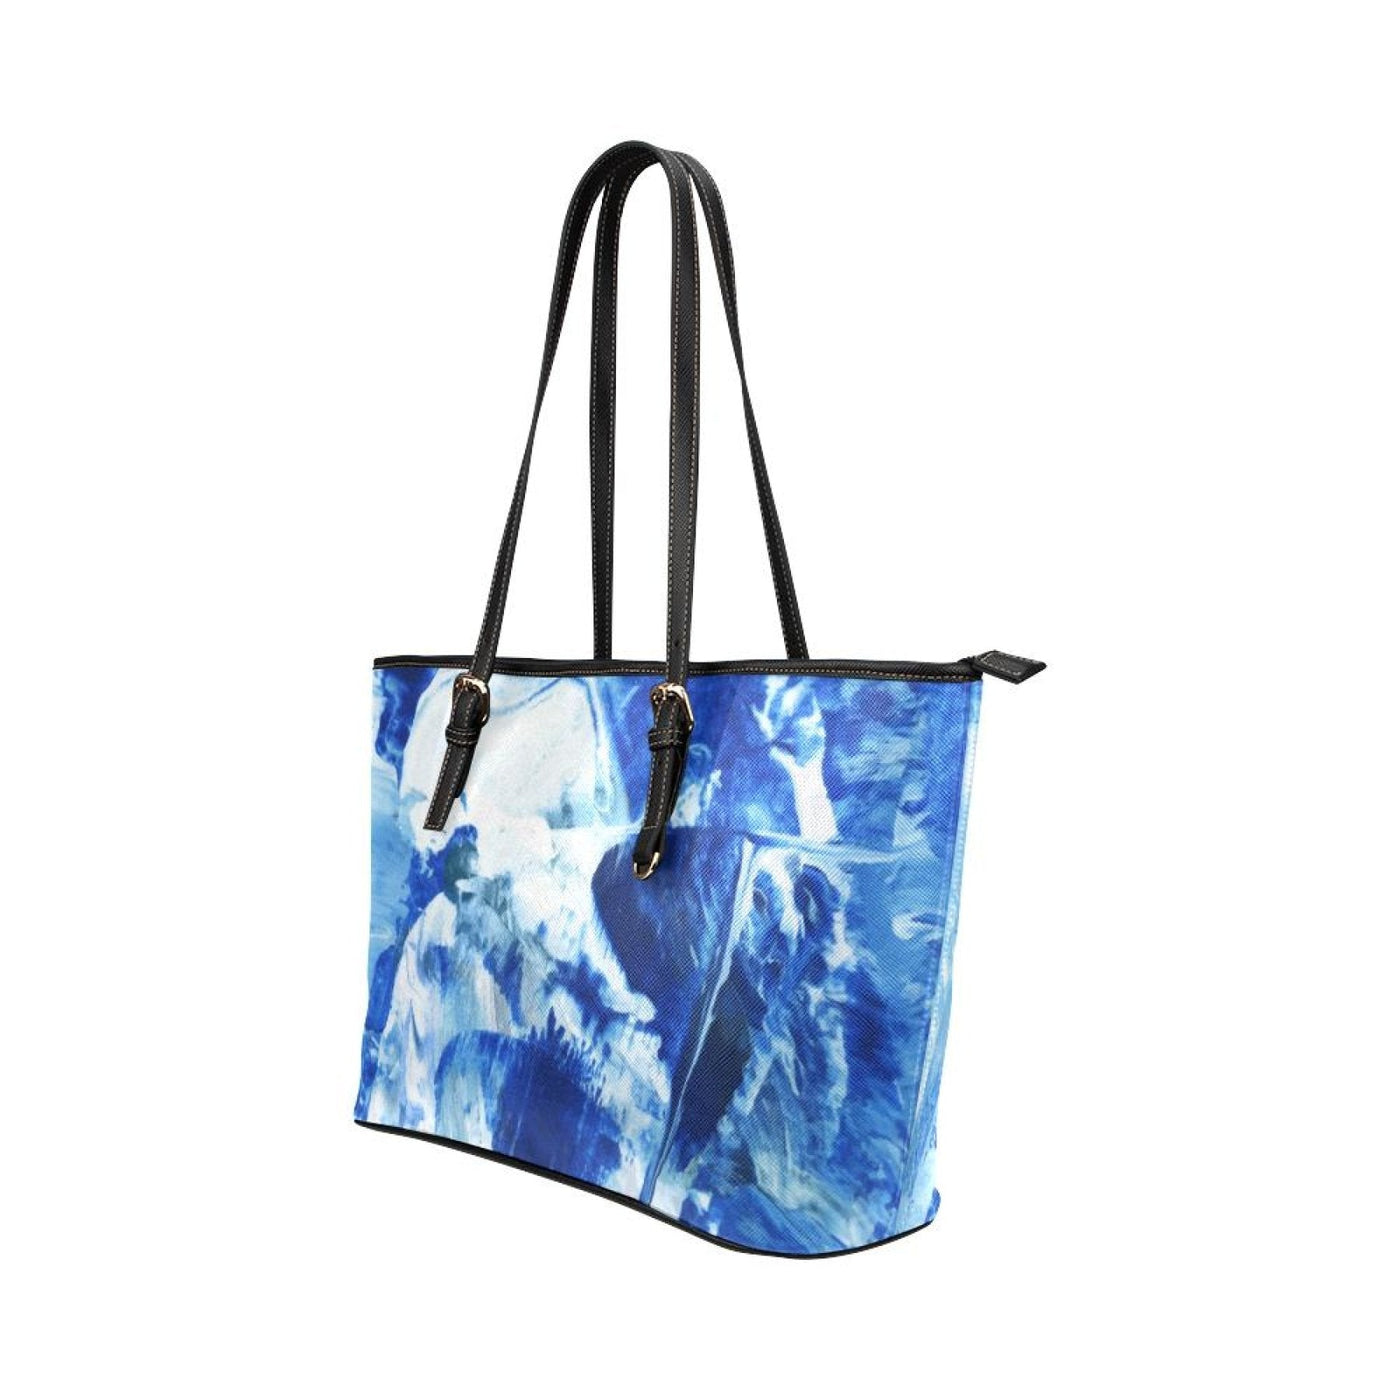 Large Leather Tote Shoulder Bag - Blue And Black Swirl Pattern Illustration -